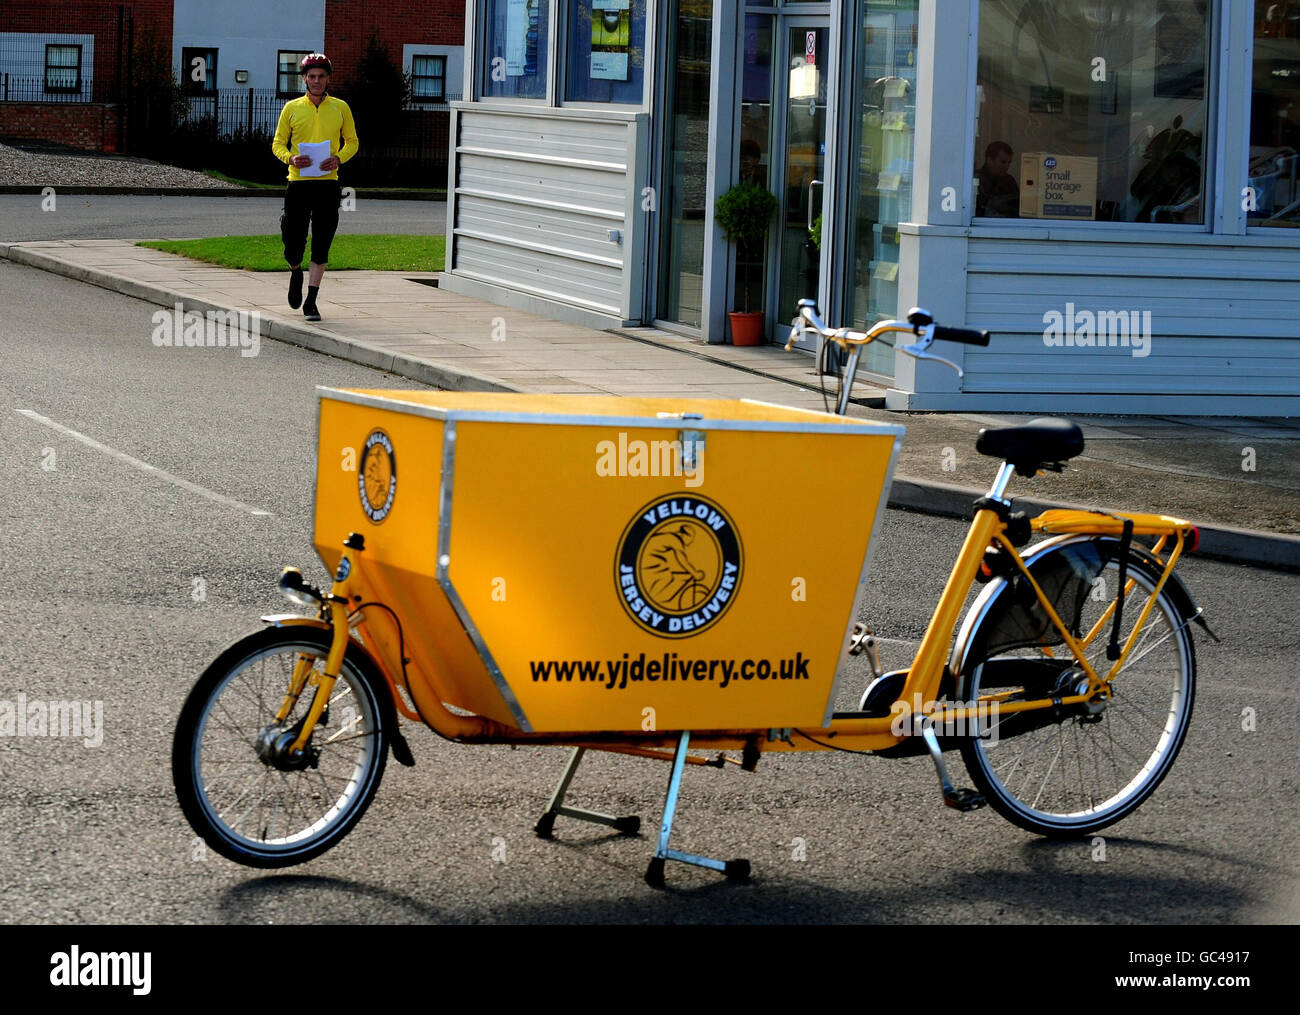 Das private Postzustellungsunternehmen Yellow Jersey liefert während des Streiks der Royal Mail Postarbeiter Post in den Straßen von Coventry. Stockfoto